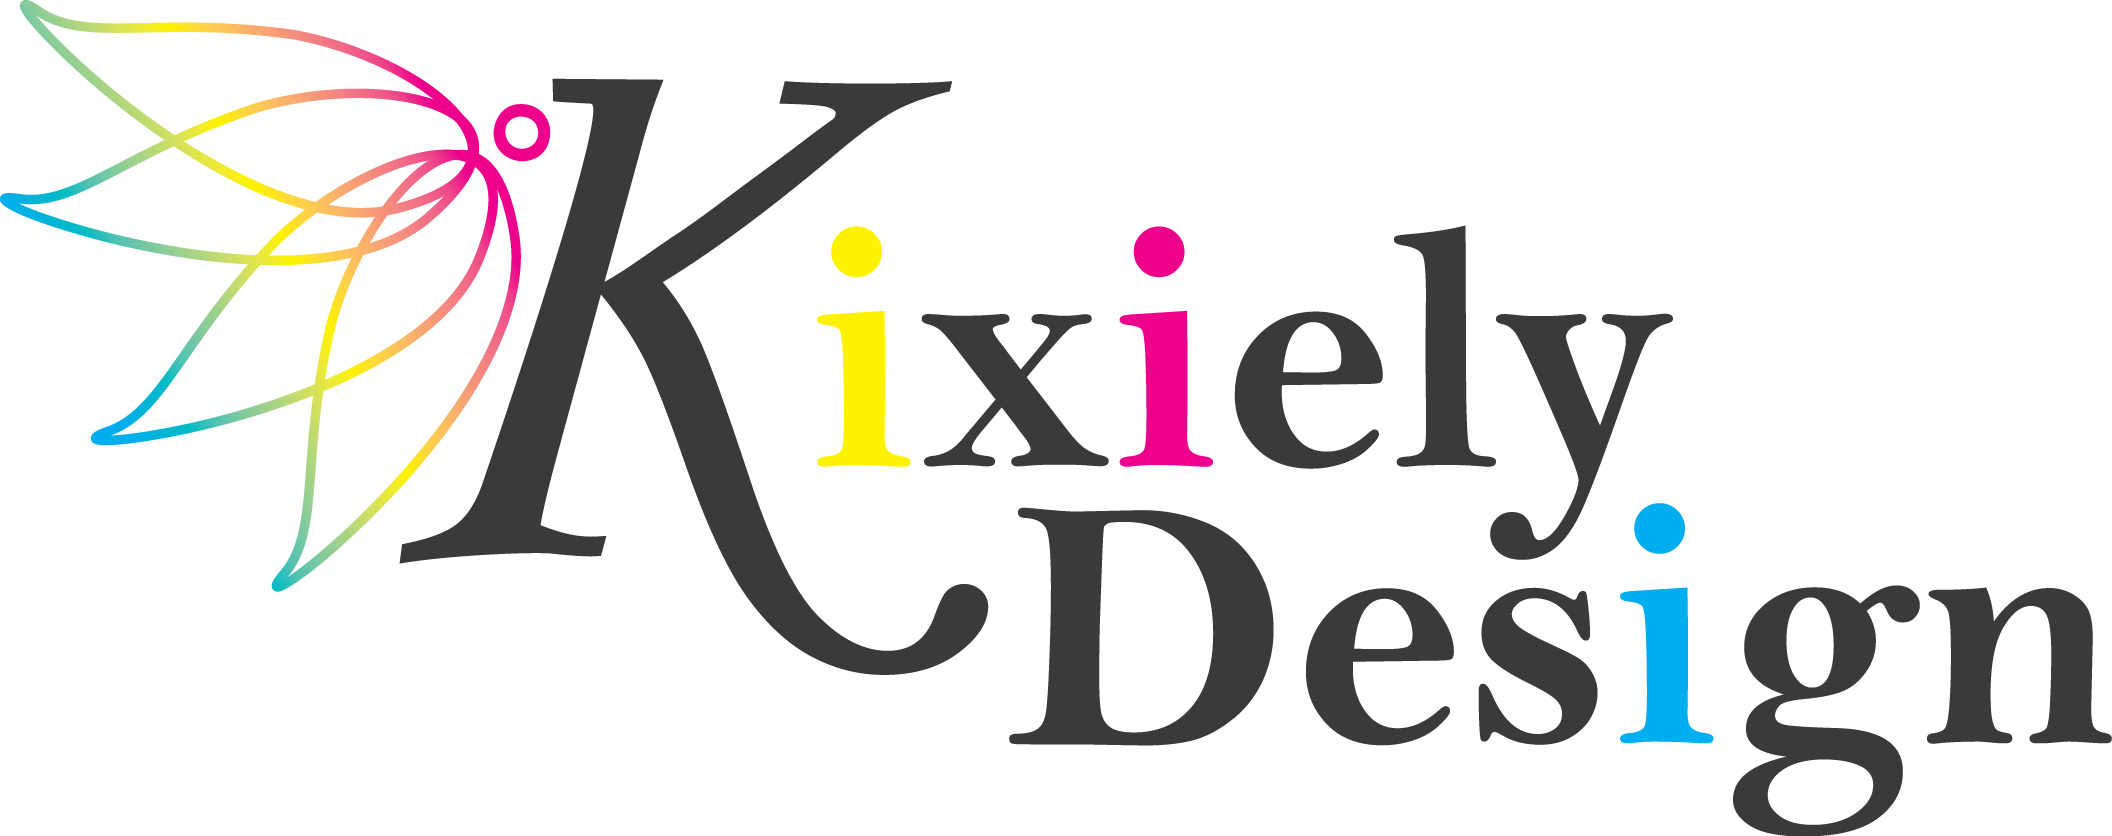 Kixiely Design